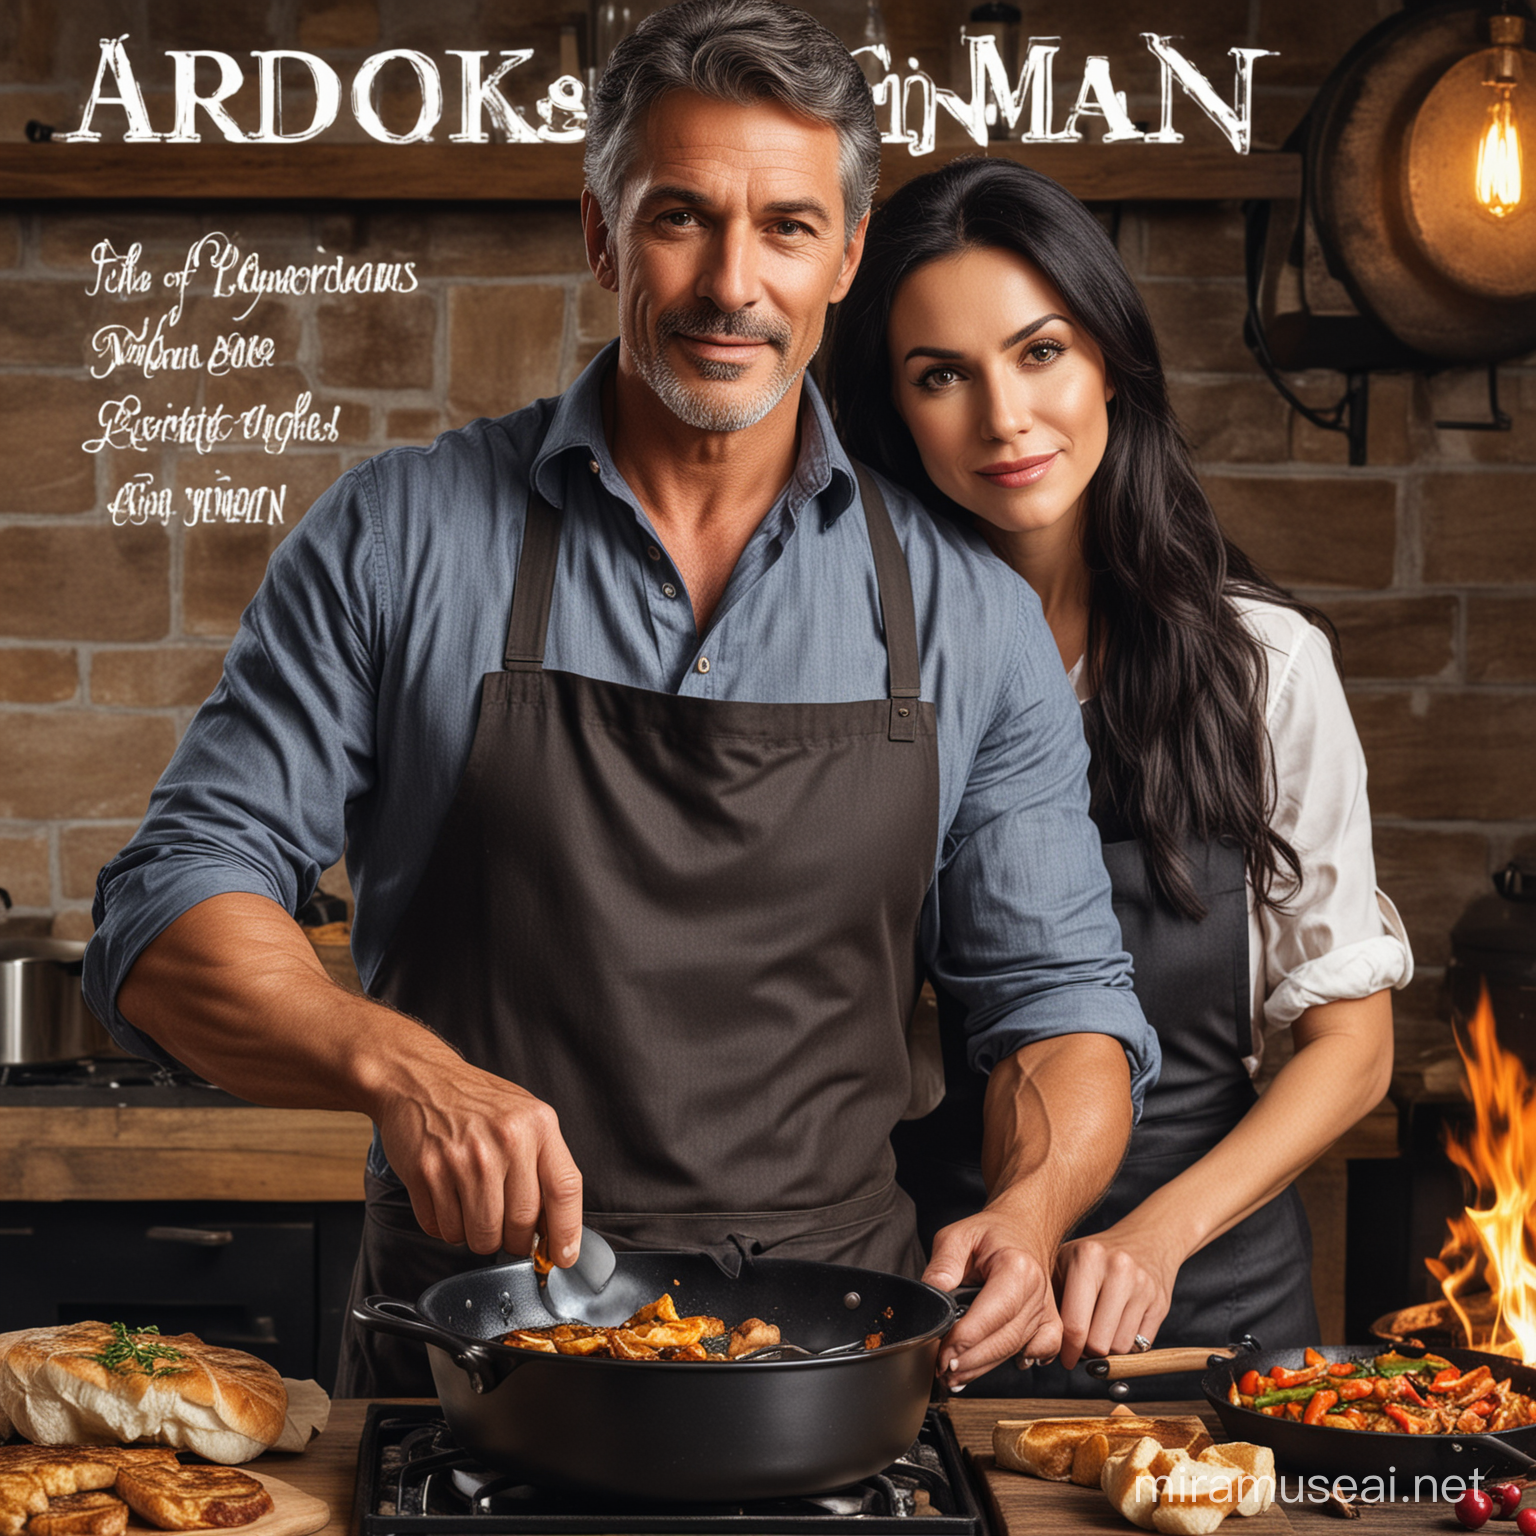 обложка книги Красивый мужчина зрелый брюнет брутальный и красивая женщина с черными волосами, ресторан, готовят еду, сковорода с огнем